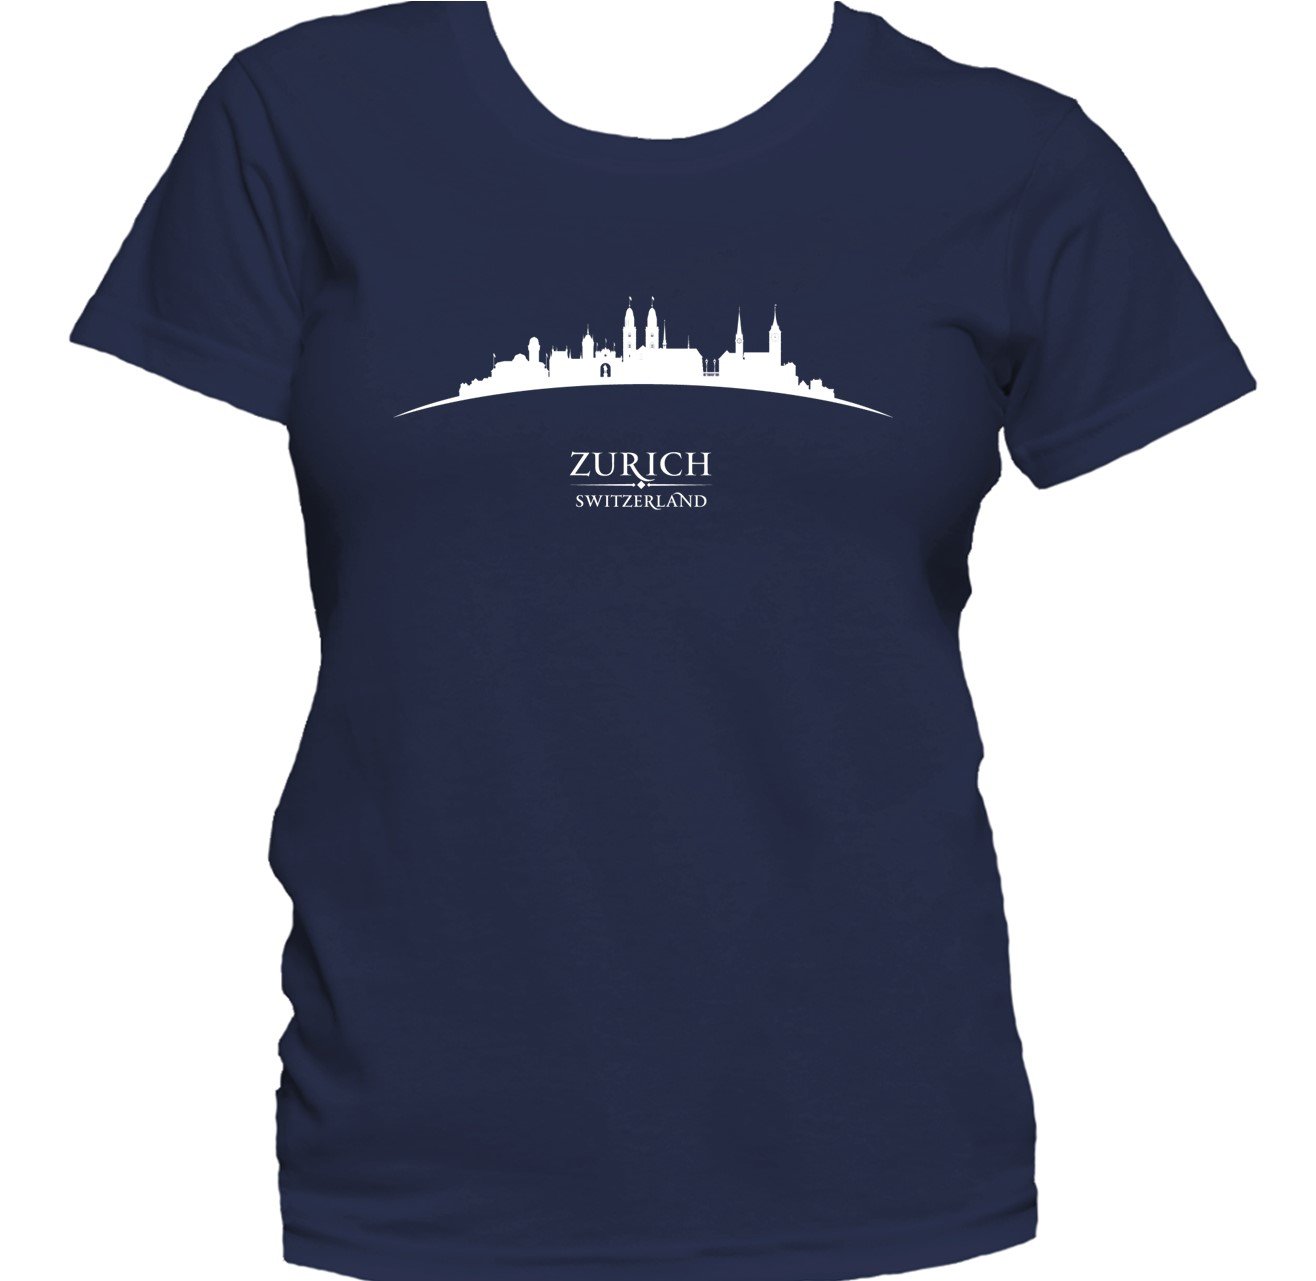 Zurich Switzerland Cityscape Downtown Skyline Women's T-Shirt